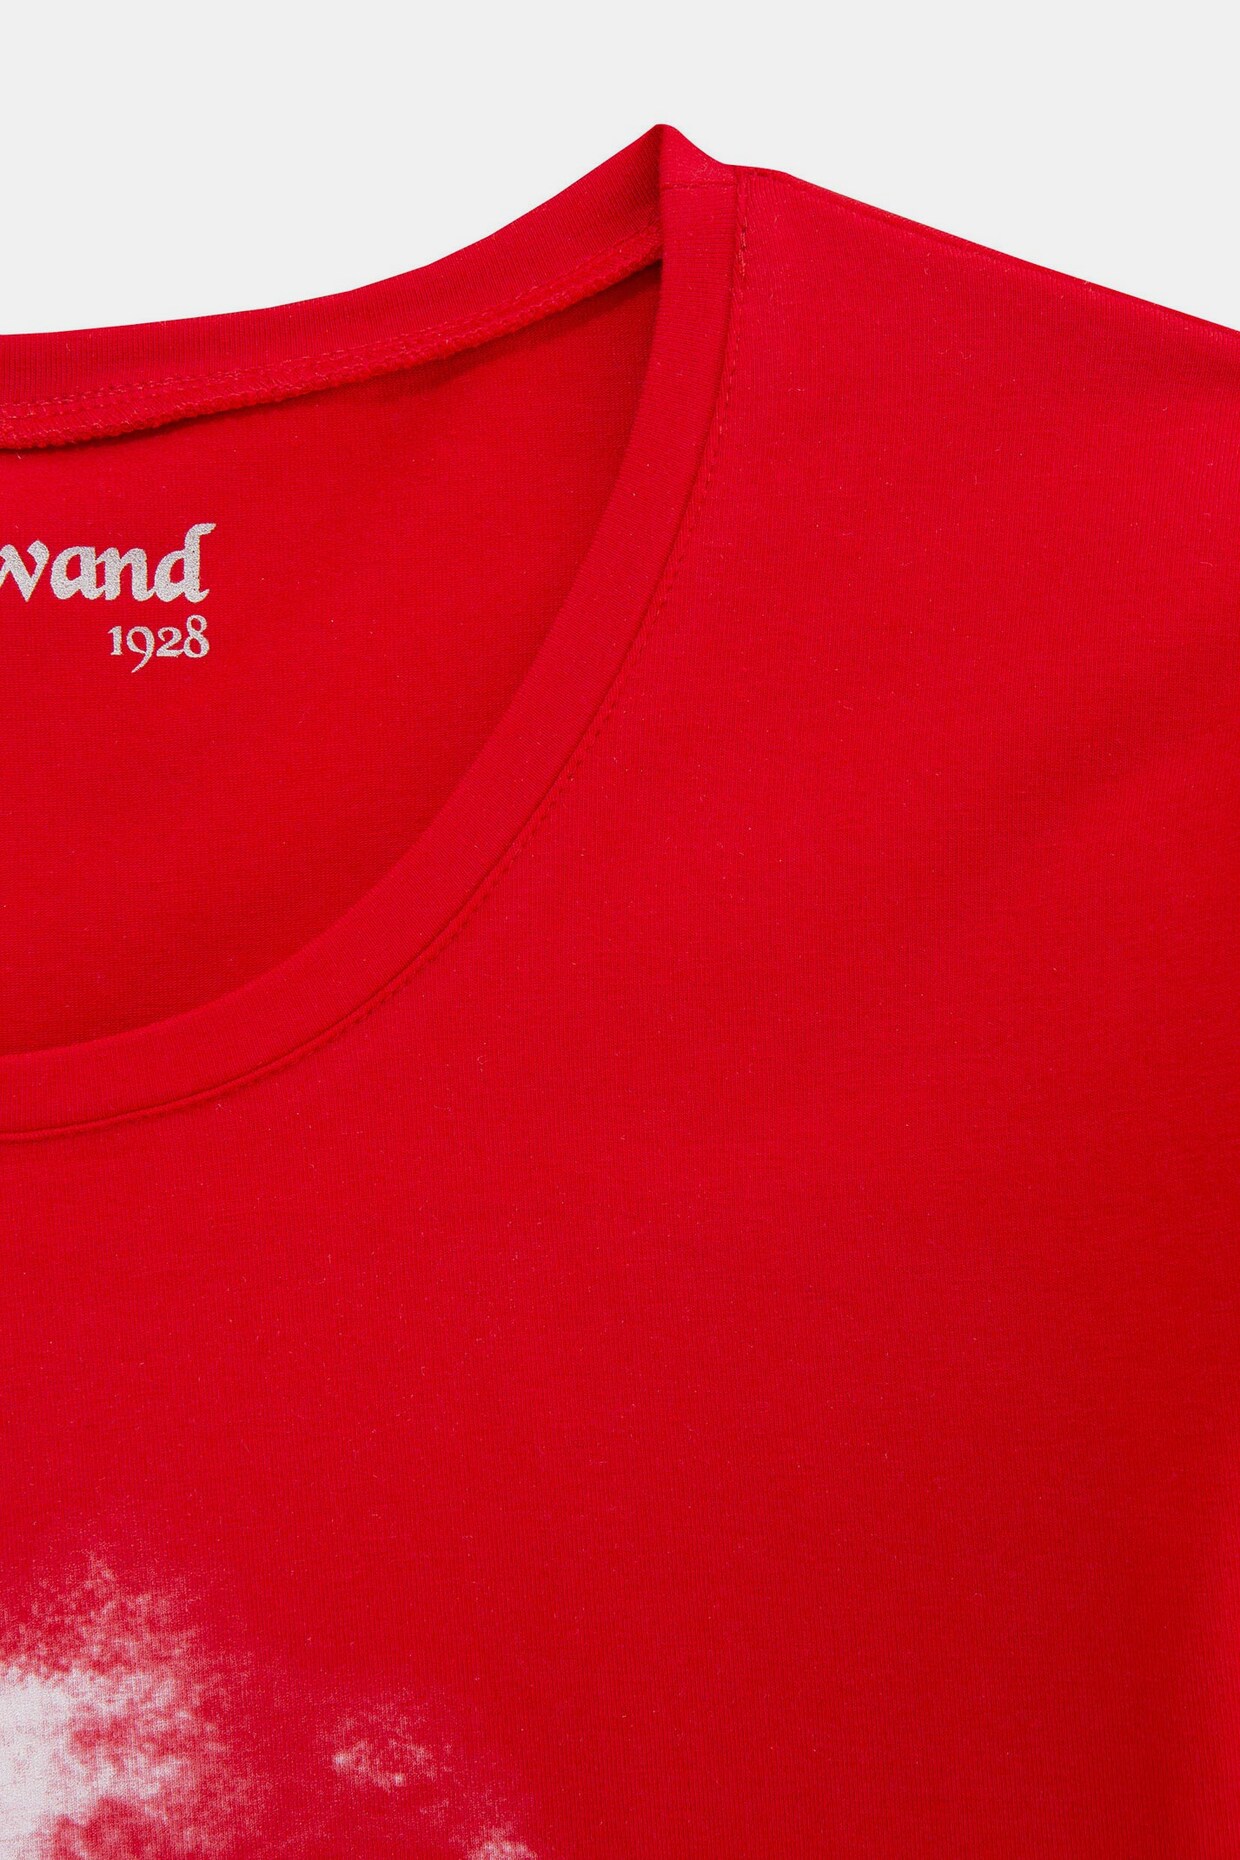 Almgwand Trachtenshirt - cherryrot